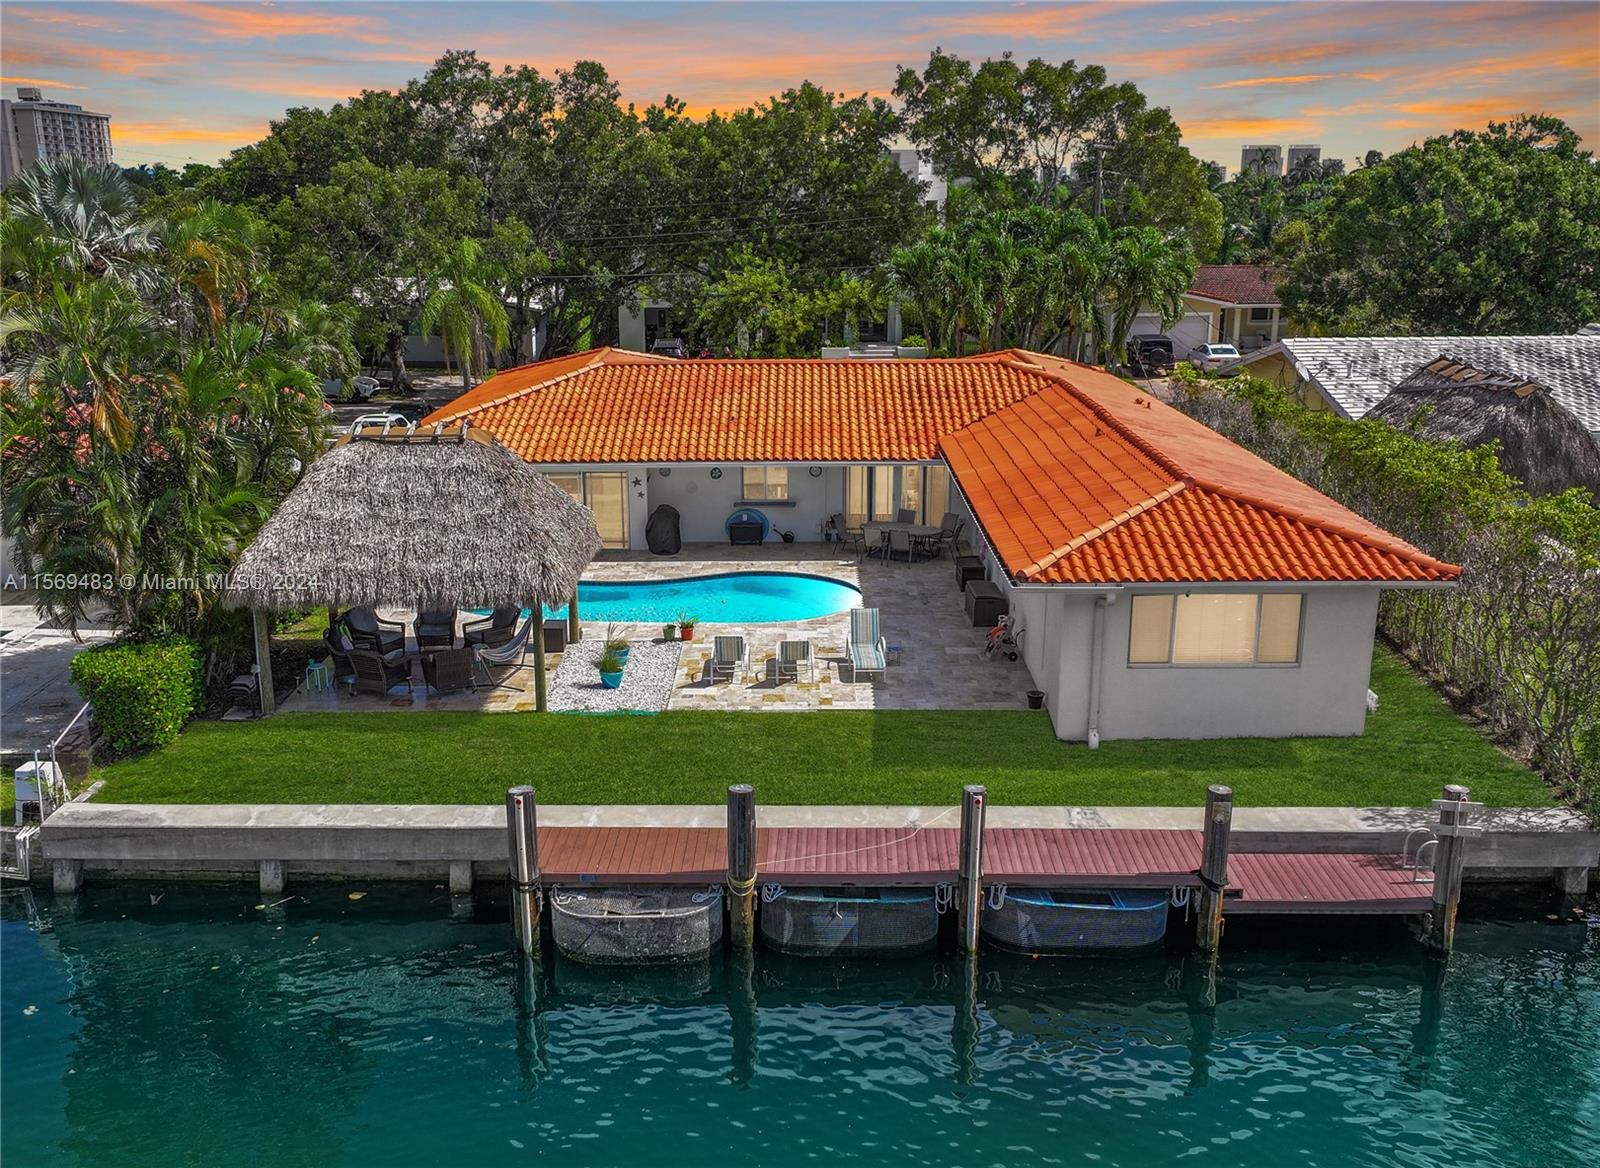 Property for Sale at 13040 Coronado Dr, North Miami, Miami-Dade County, Florida - Bedrooms: 4 
Bathrooms: 3  - $2,640,000